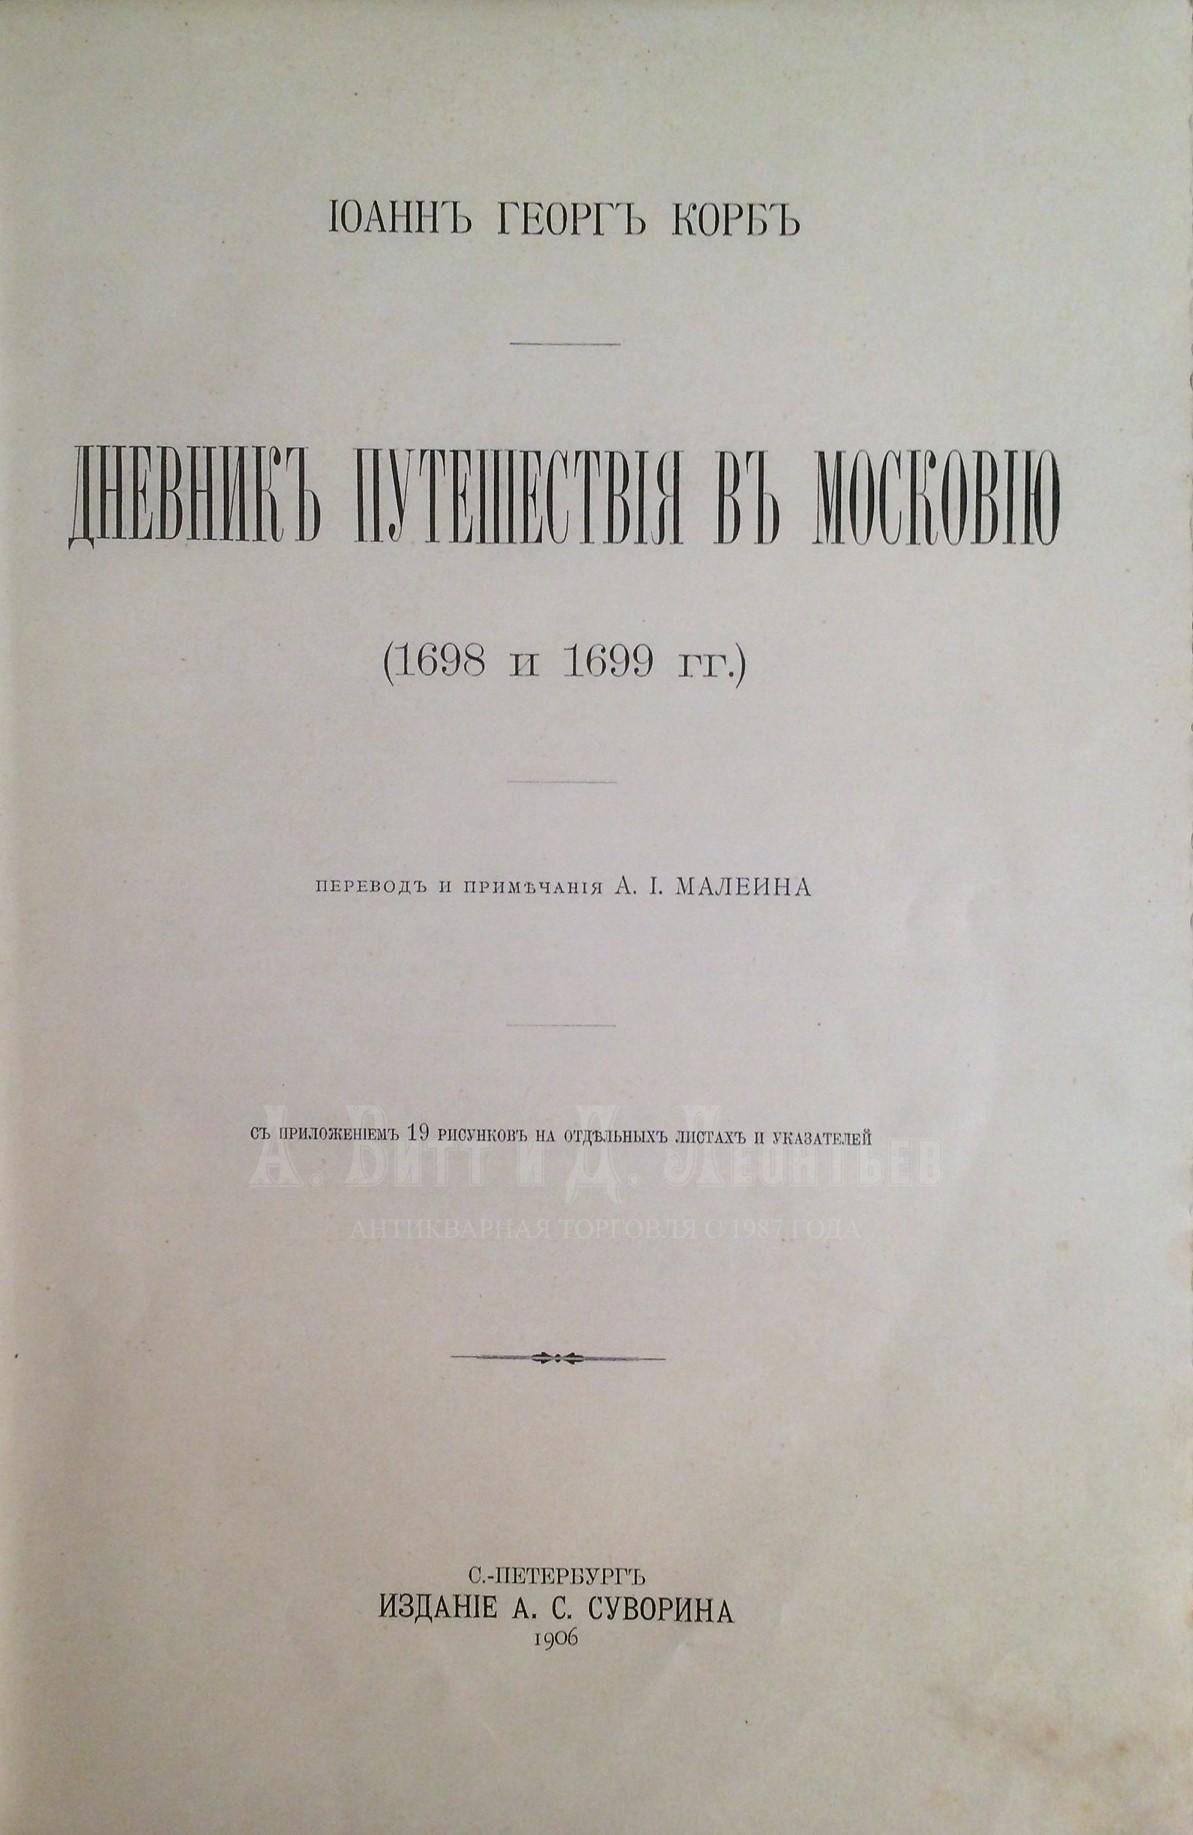 И. Г. Дневник путешествия в Московию (1698 и 1699 гг.). / Иоанн Георг Корб